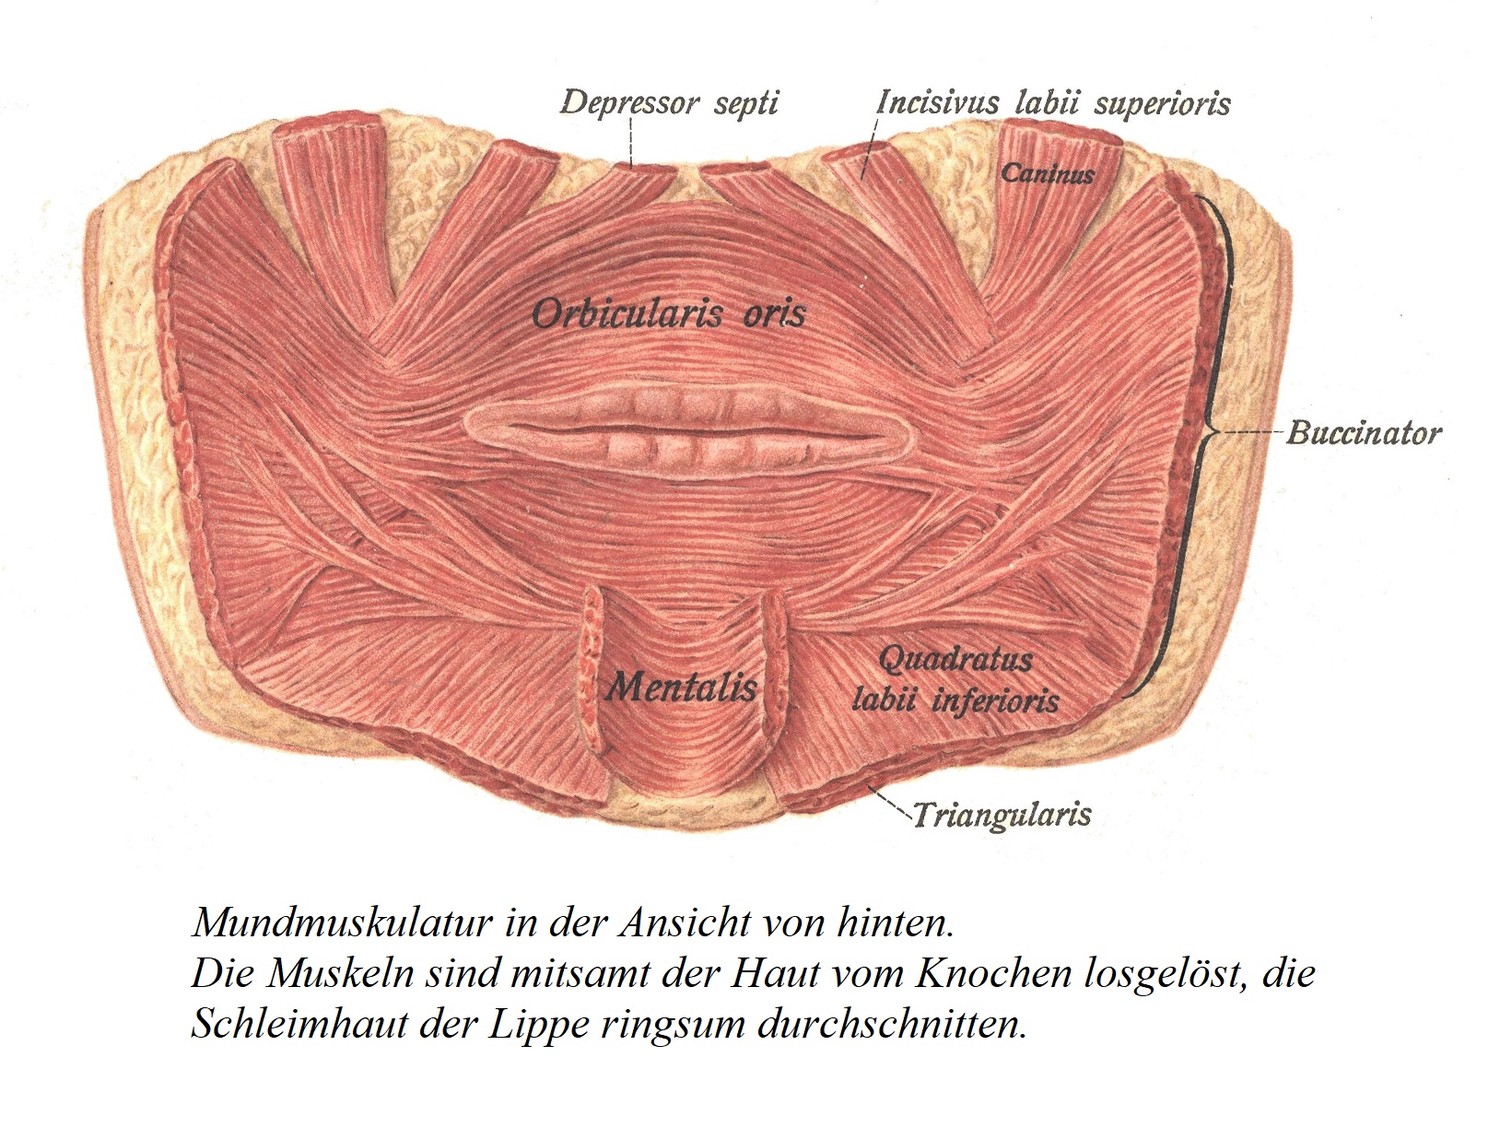 Мышцы рта, вид сзади. Мышцы были отделены от кости вместе с кожей, а слизистая оболочка вокруг губы была разорвана.